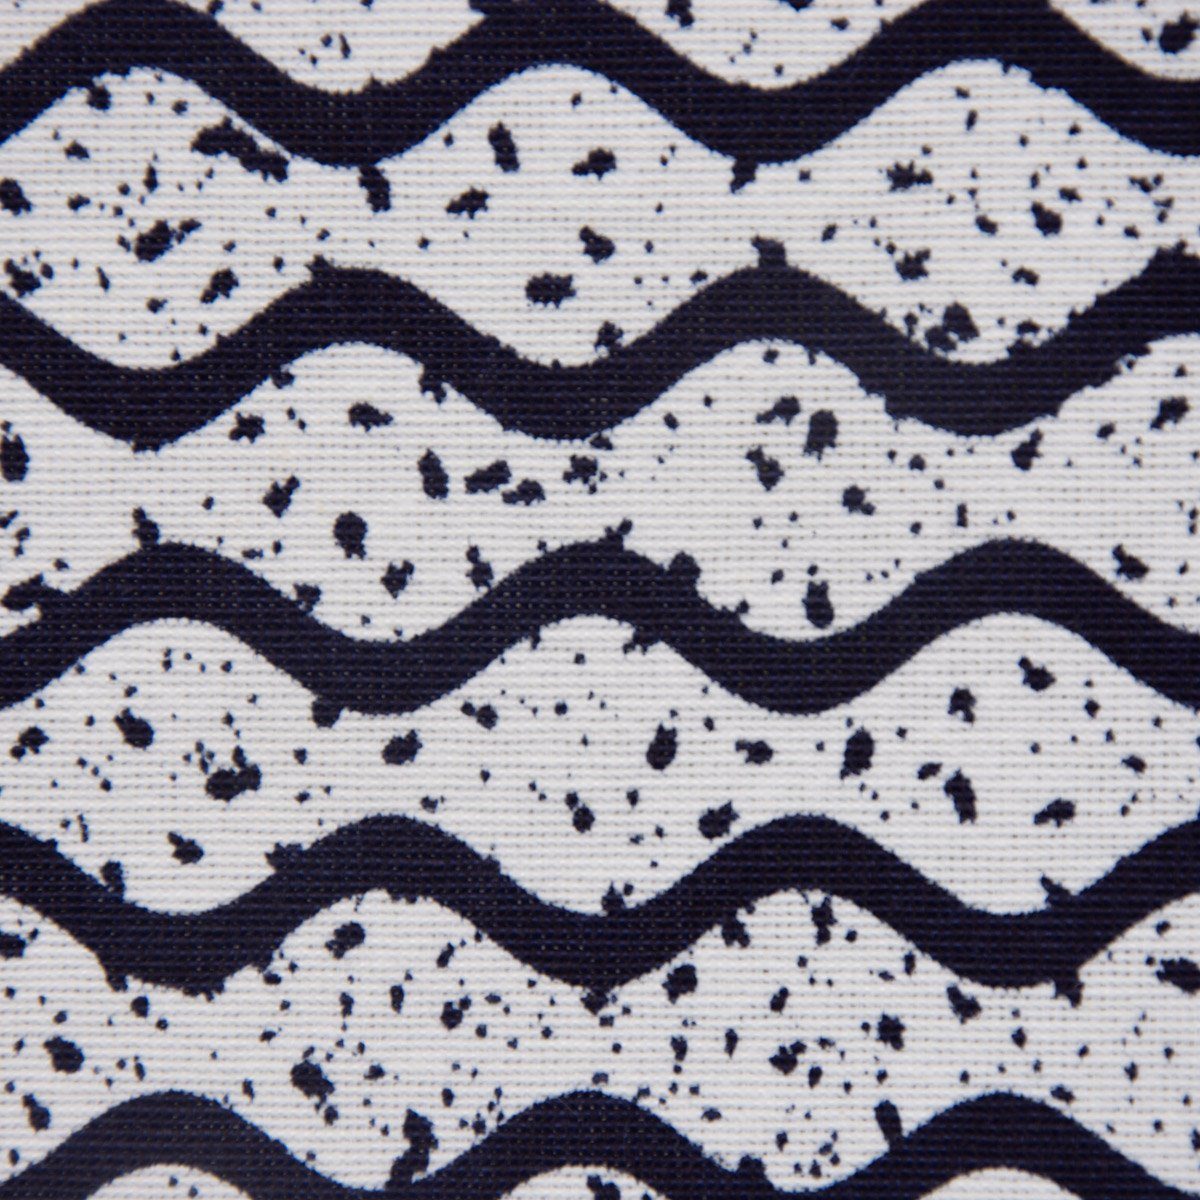 SCHÖNER LEBEN. Tischläufer dunkelblau weiß Punkte handmade Wellen 40x160cm, LEBEN. Tischläufer SCHÖNER